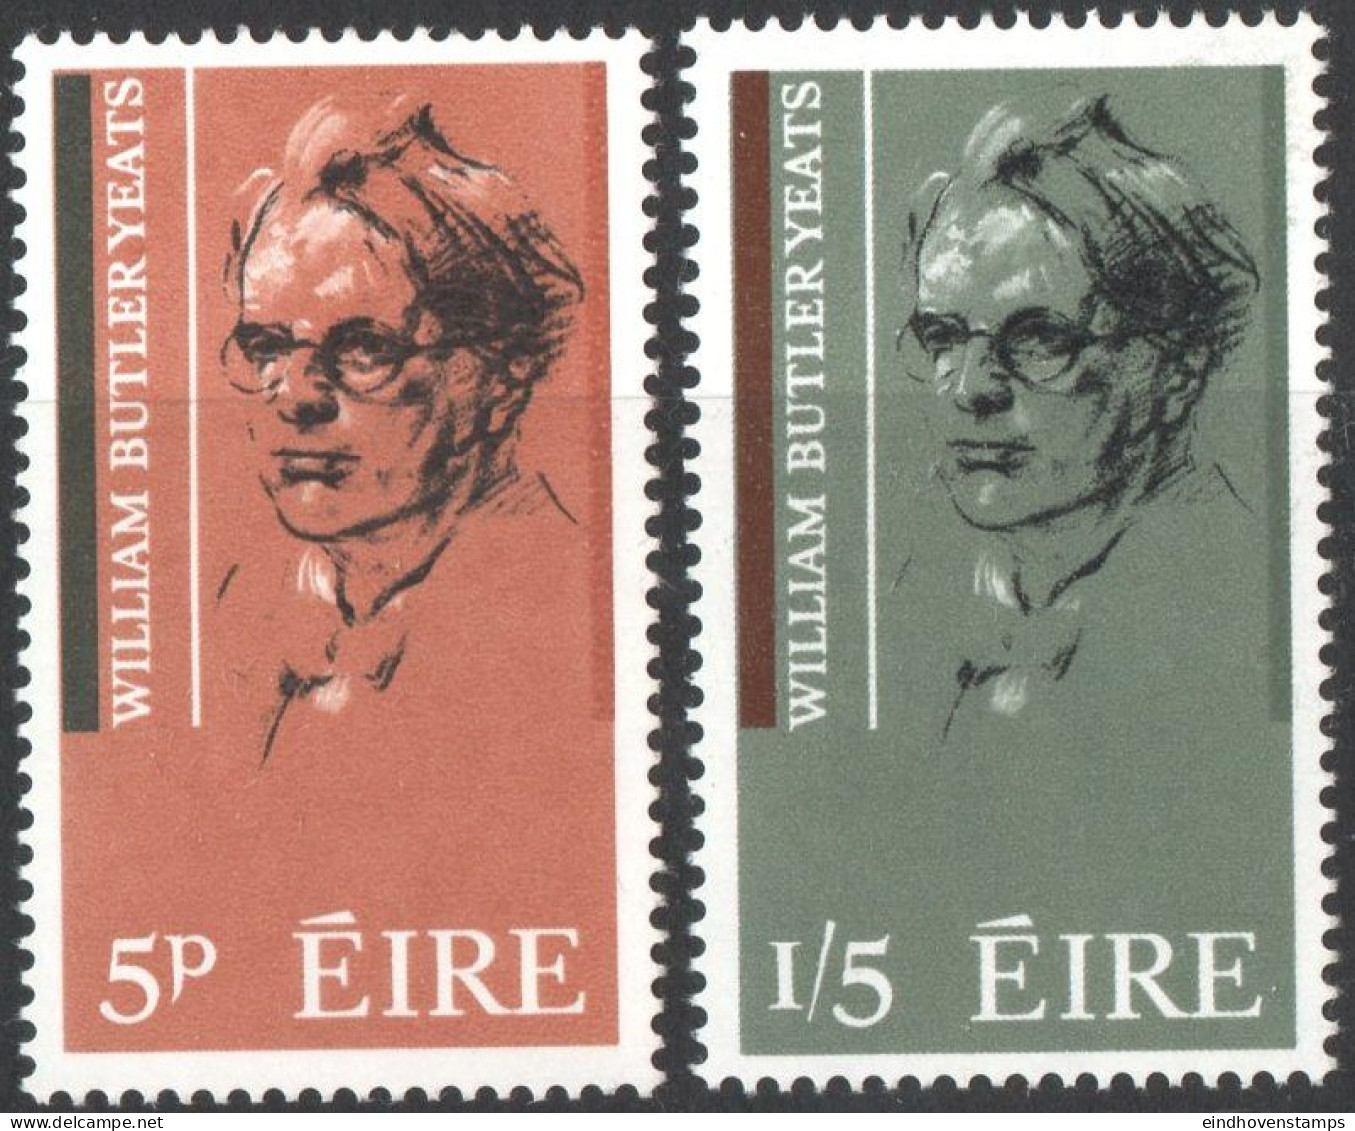 Eire 1965 William Butler Yeats, Writer, 2 Values MNH Ireland Portrait By Sean O'Sullivan - Schriftsteller